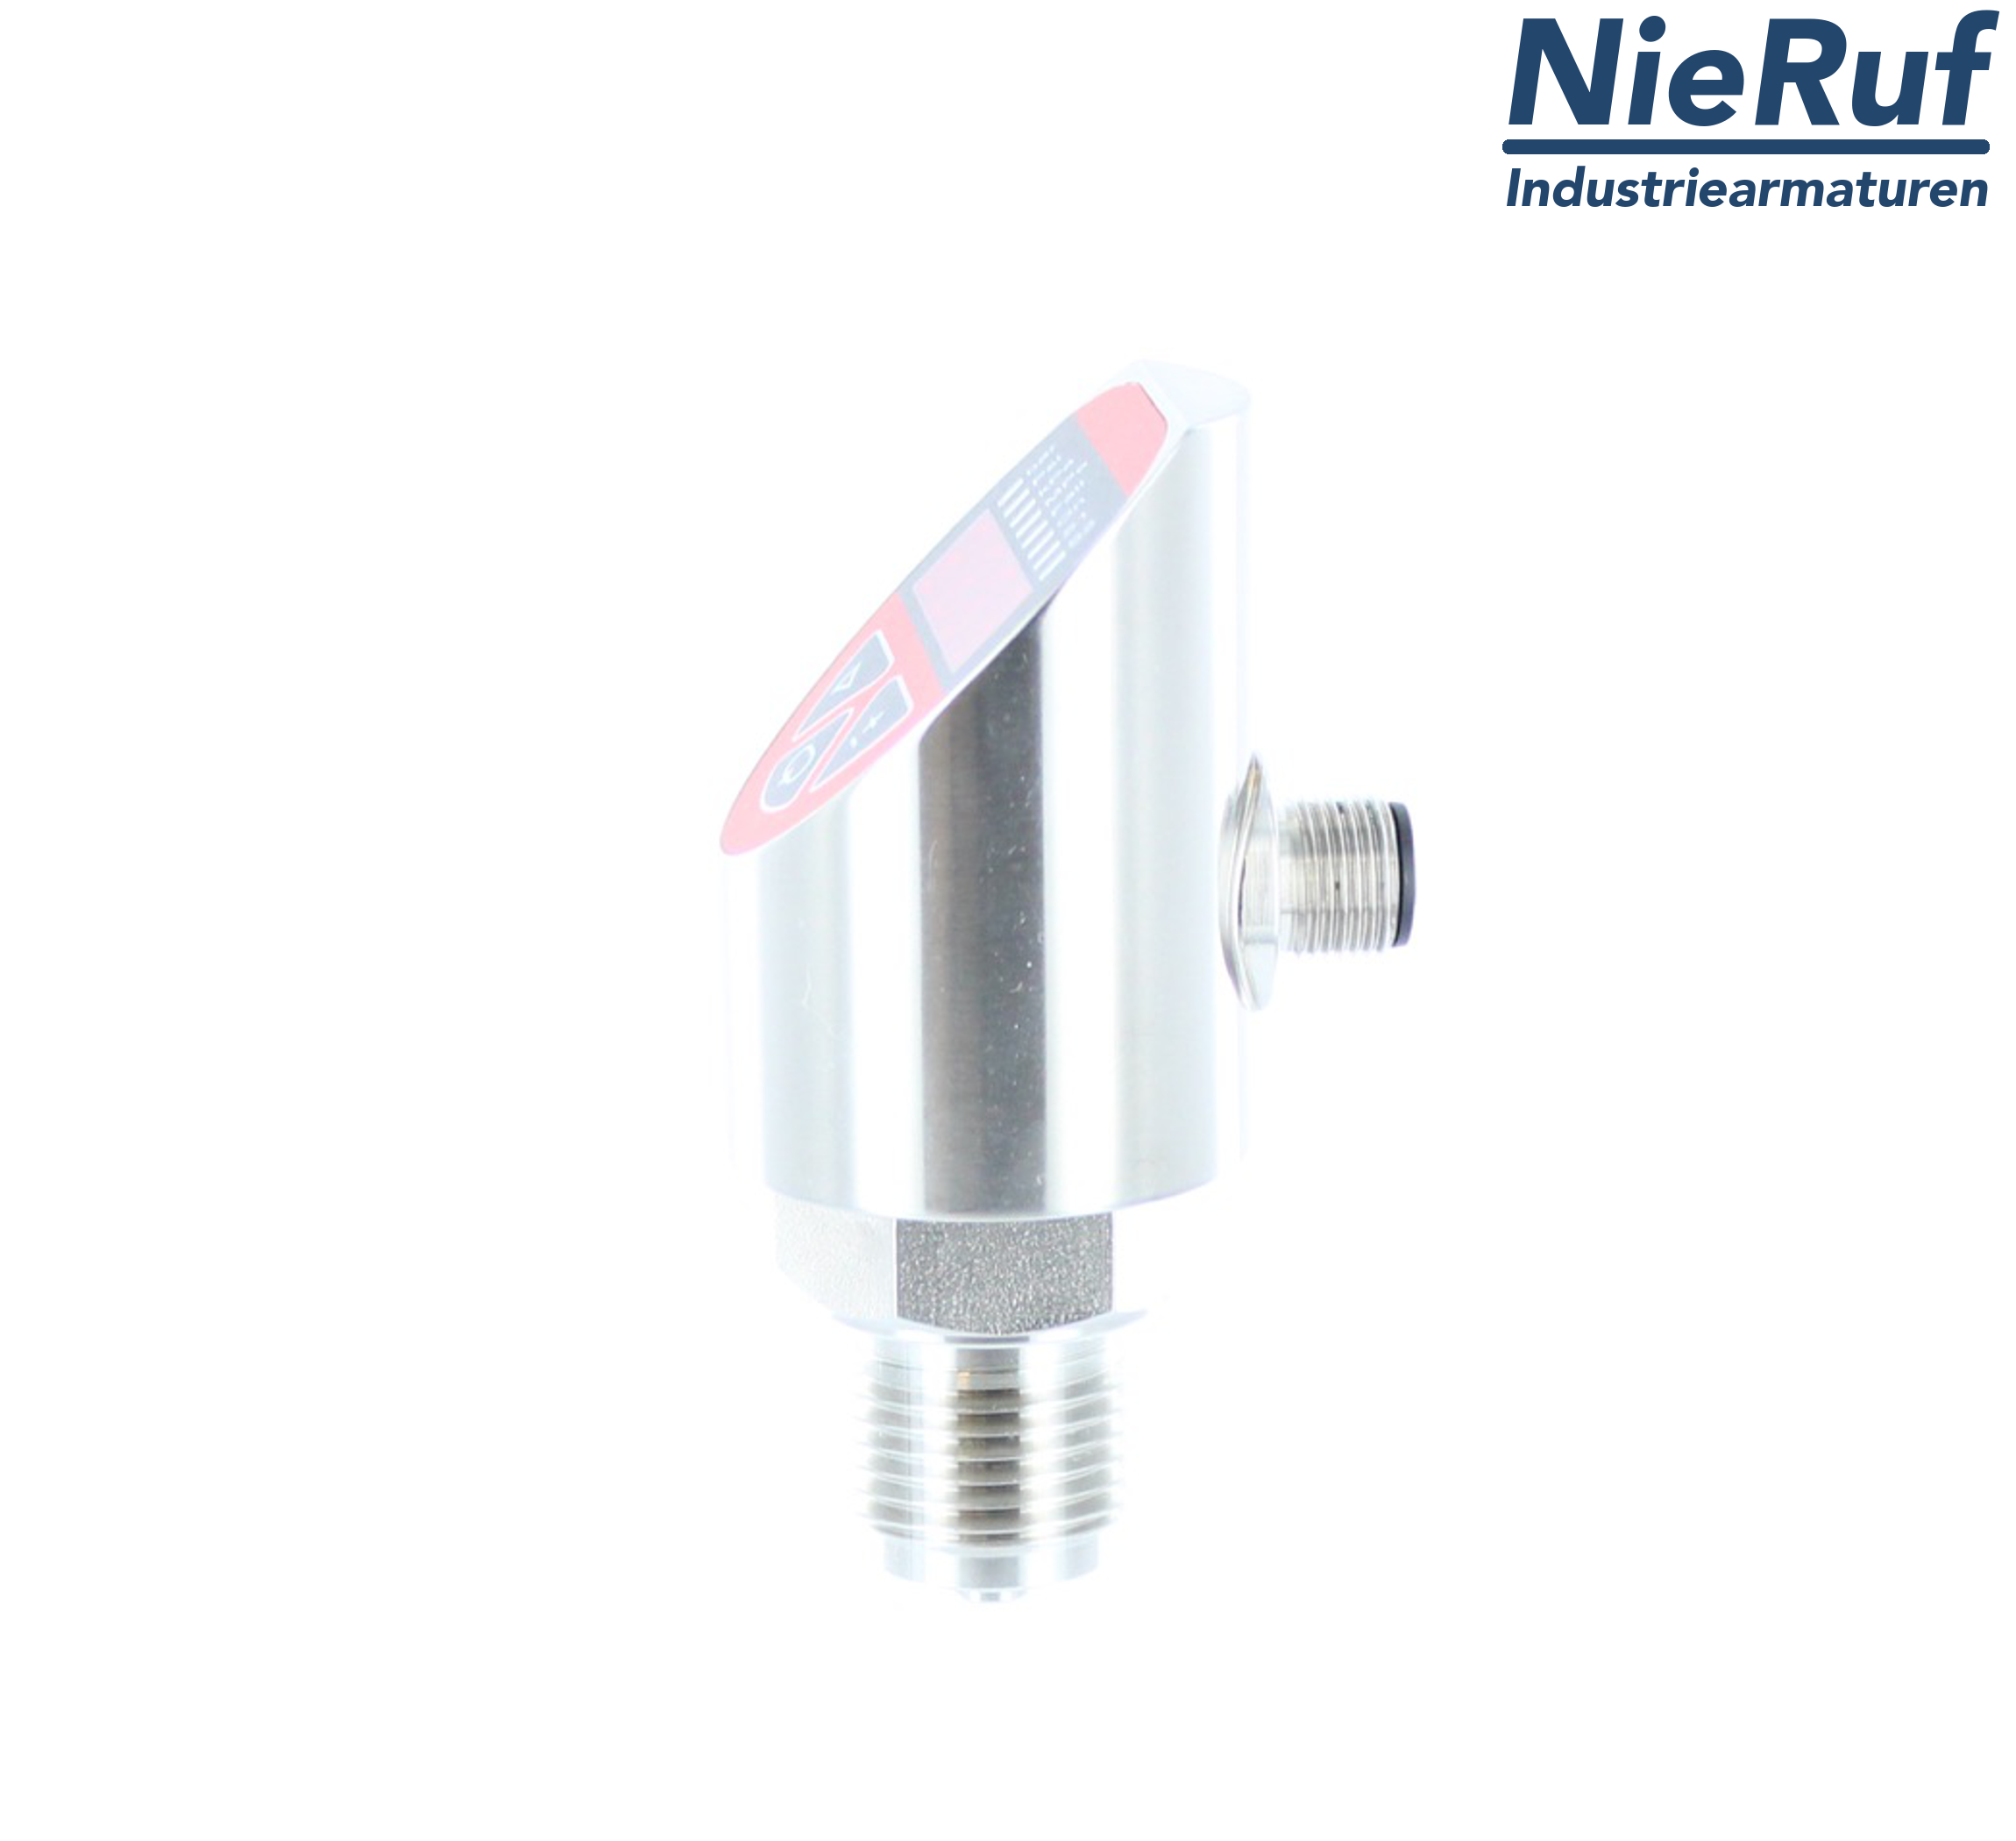 digital pressure sensor G 1/4" B 5-wire: 2xPNP, 1x4 - 20mA FPM 0,0 - 1,0 bar